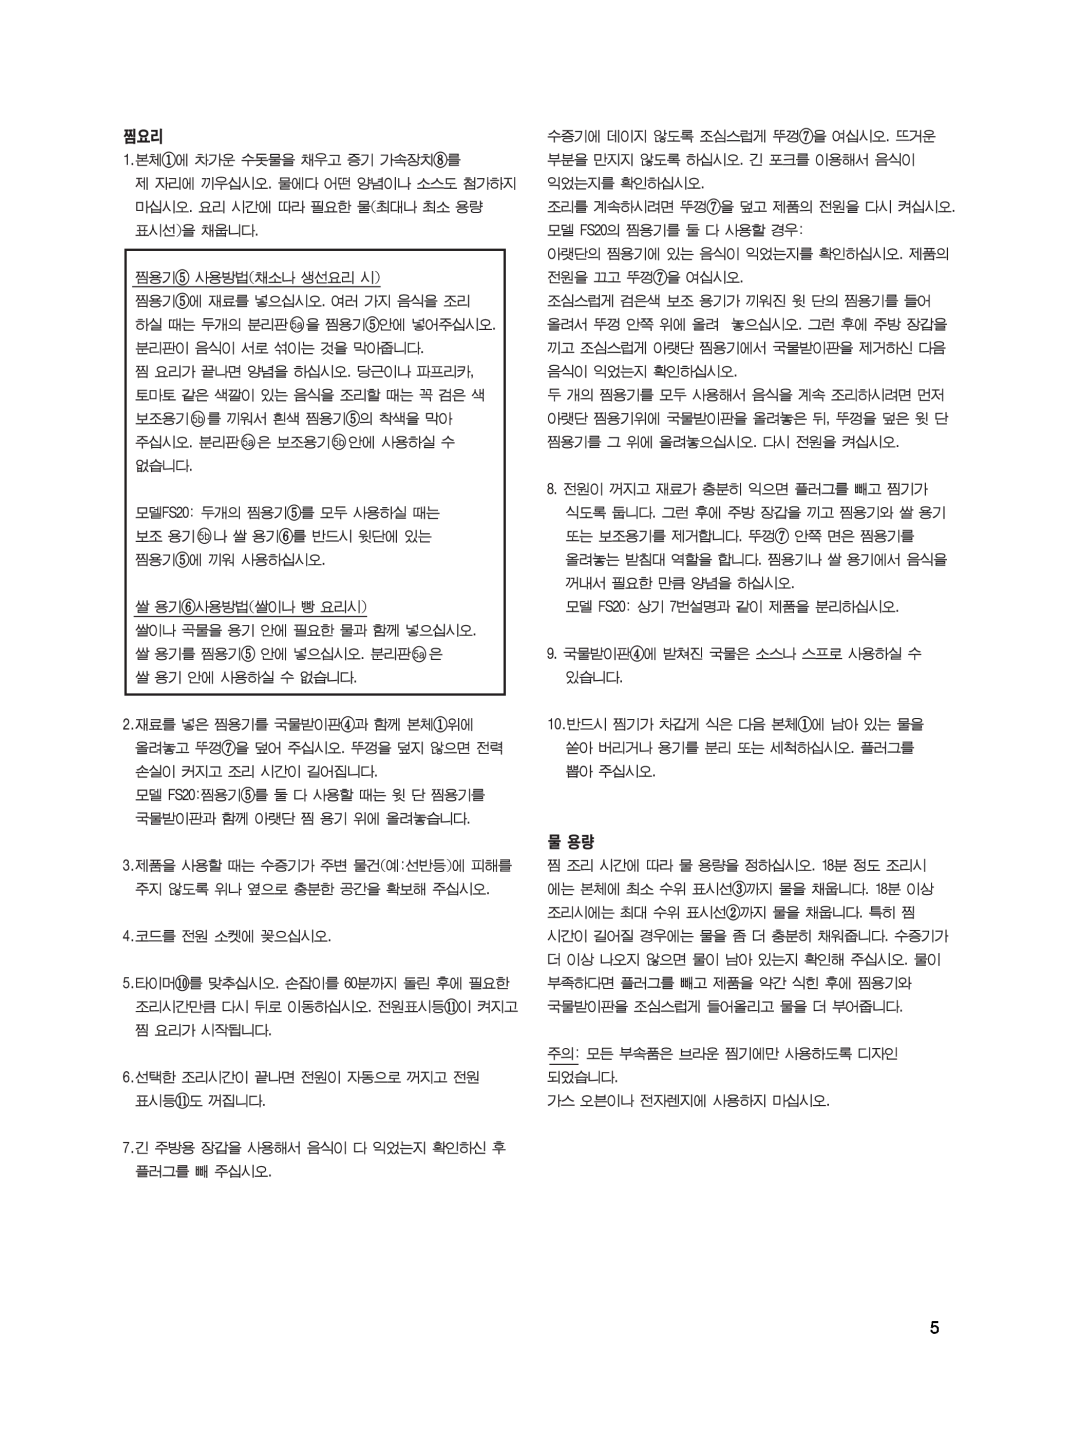 Braun FS20, FS10 manual 